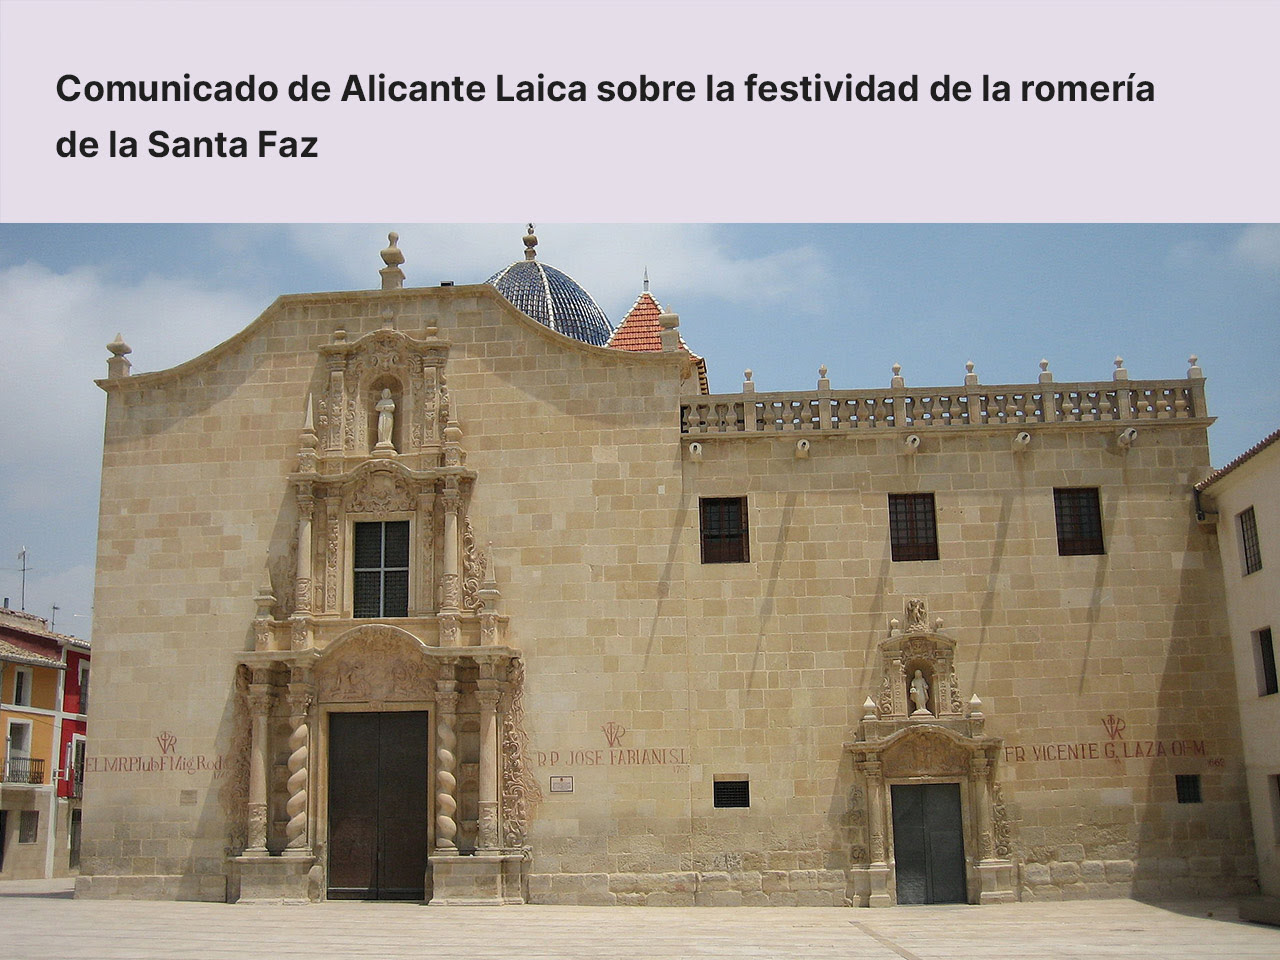 Comunicado de Alicante Laica sobre la Romería de la Santa Faz